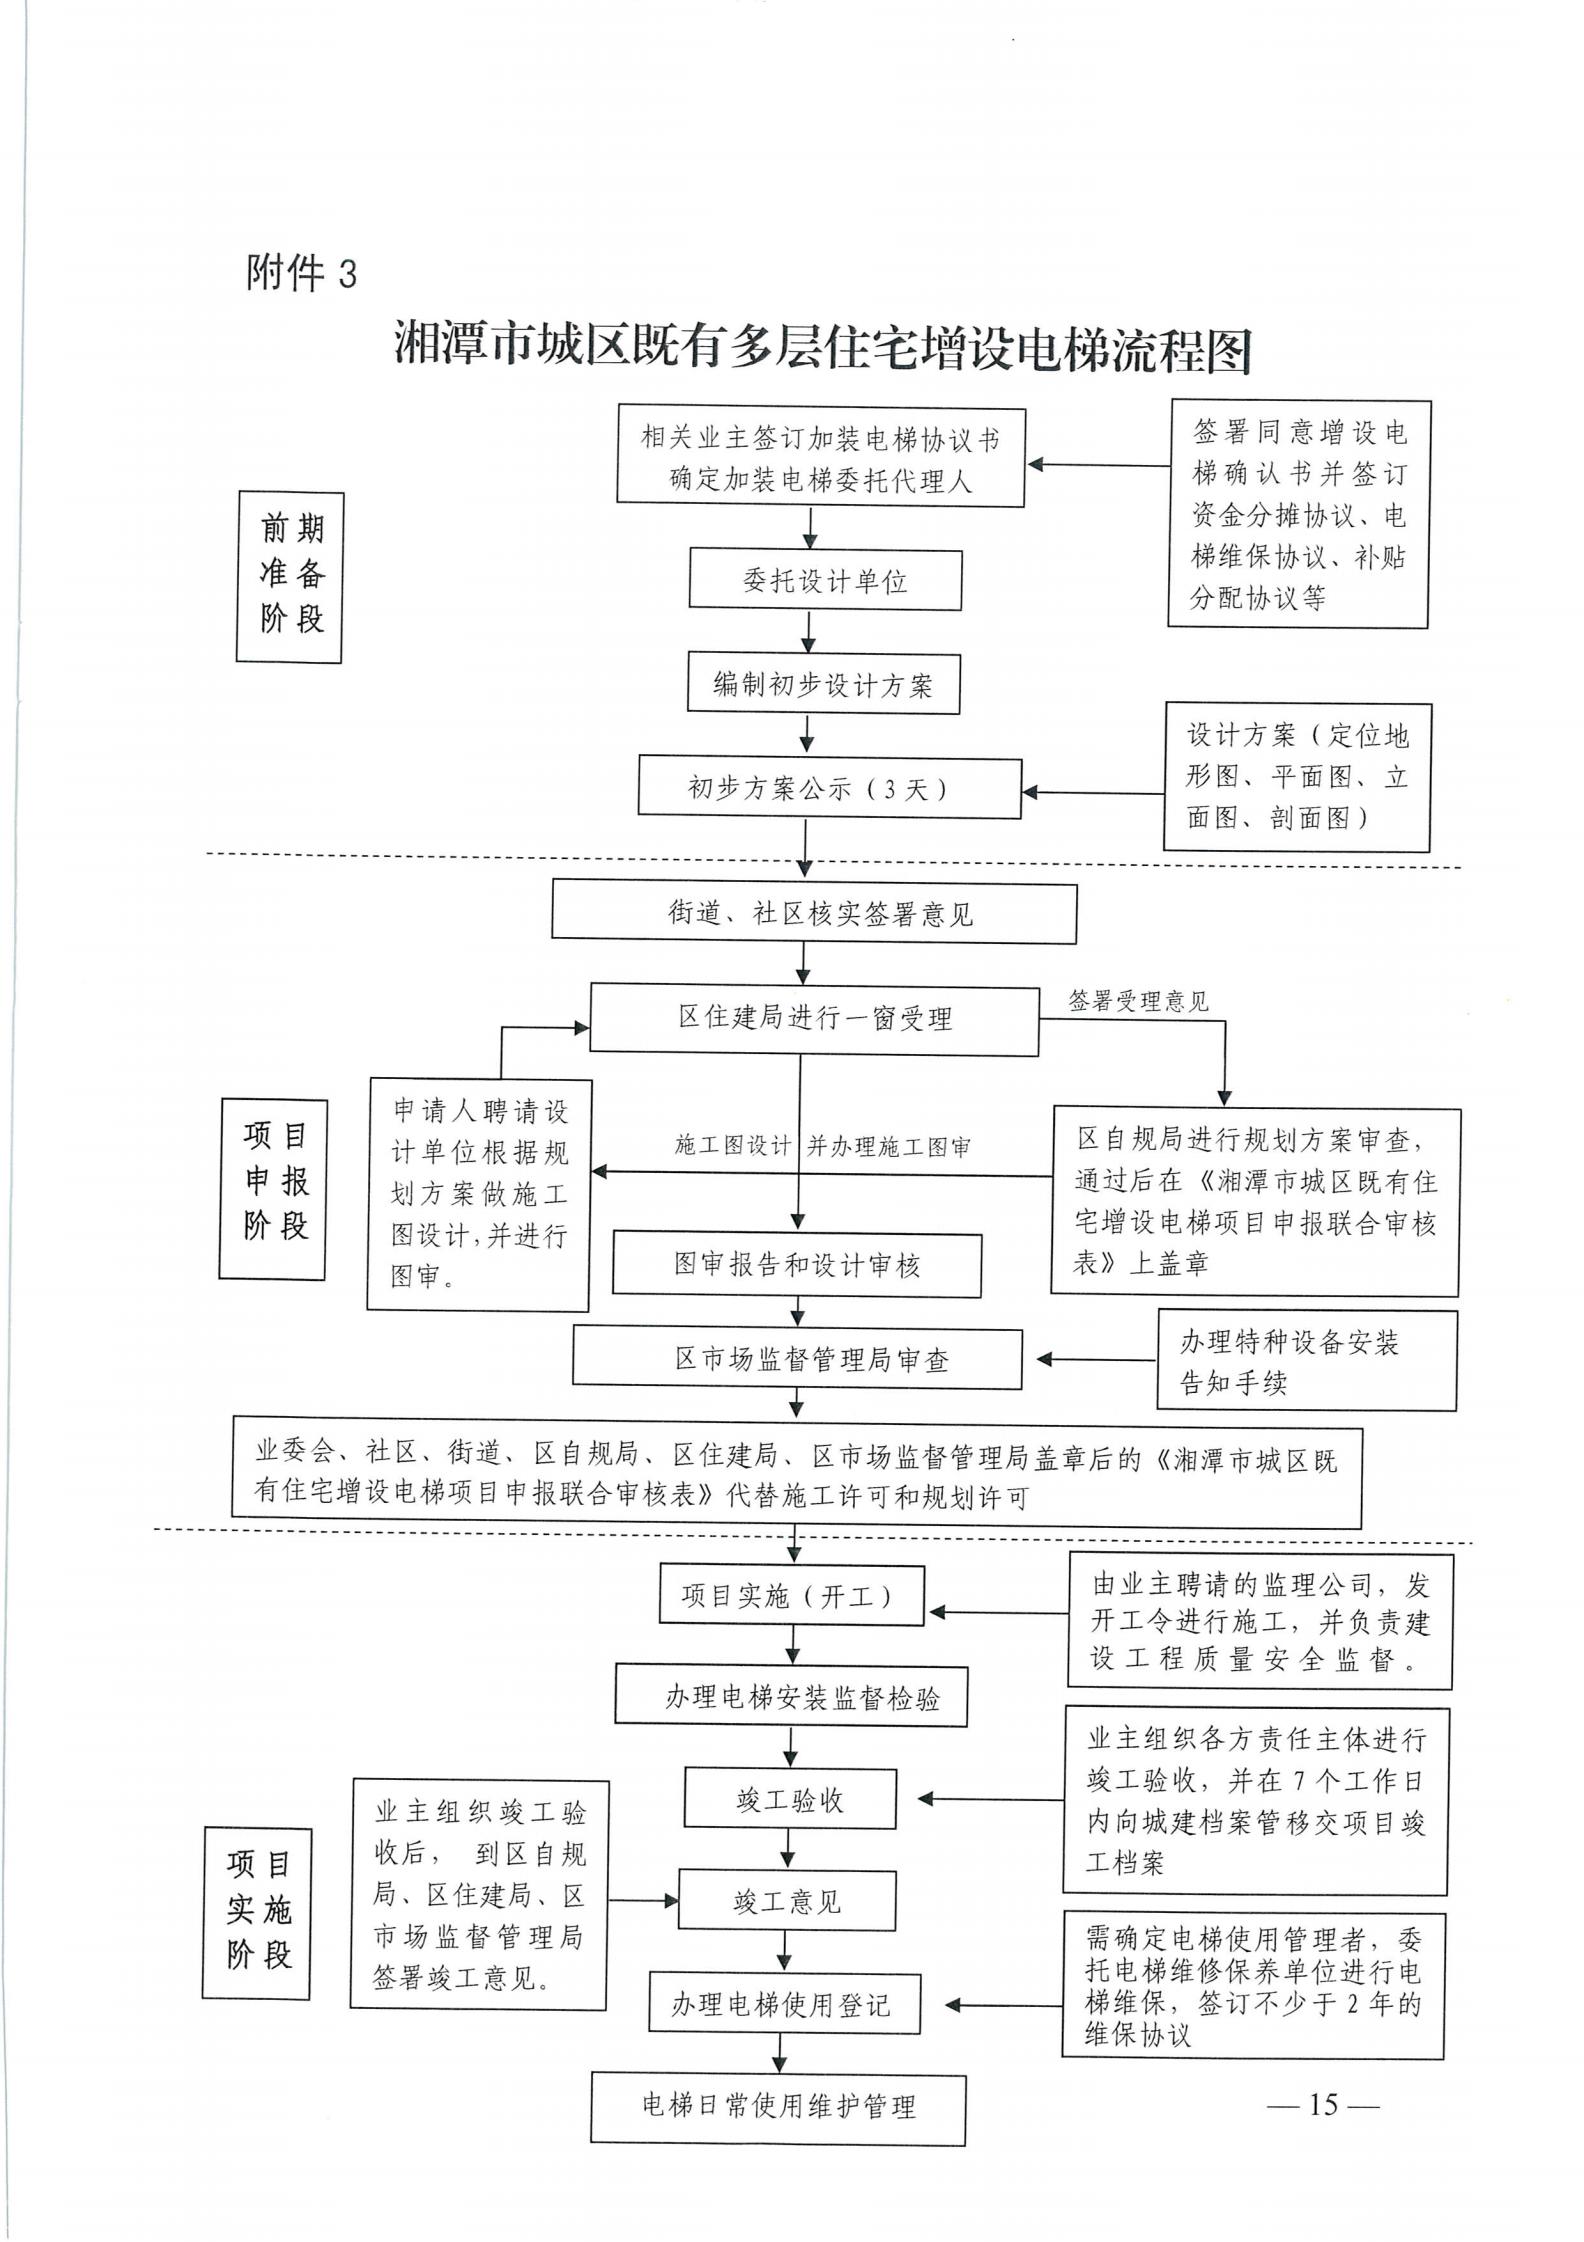 湘潭市六部门印发有关加装电梯的通知(图15)